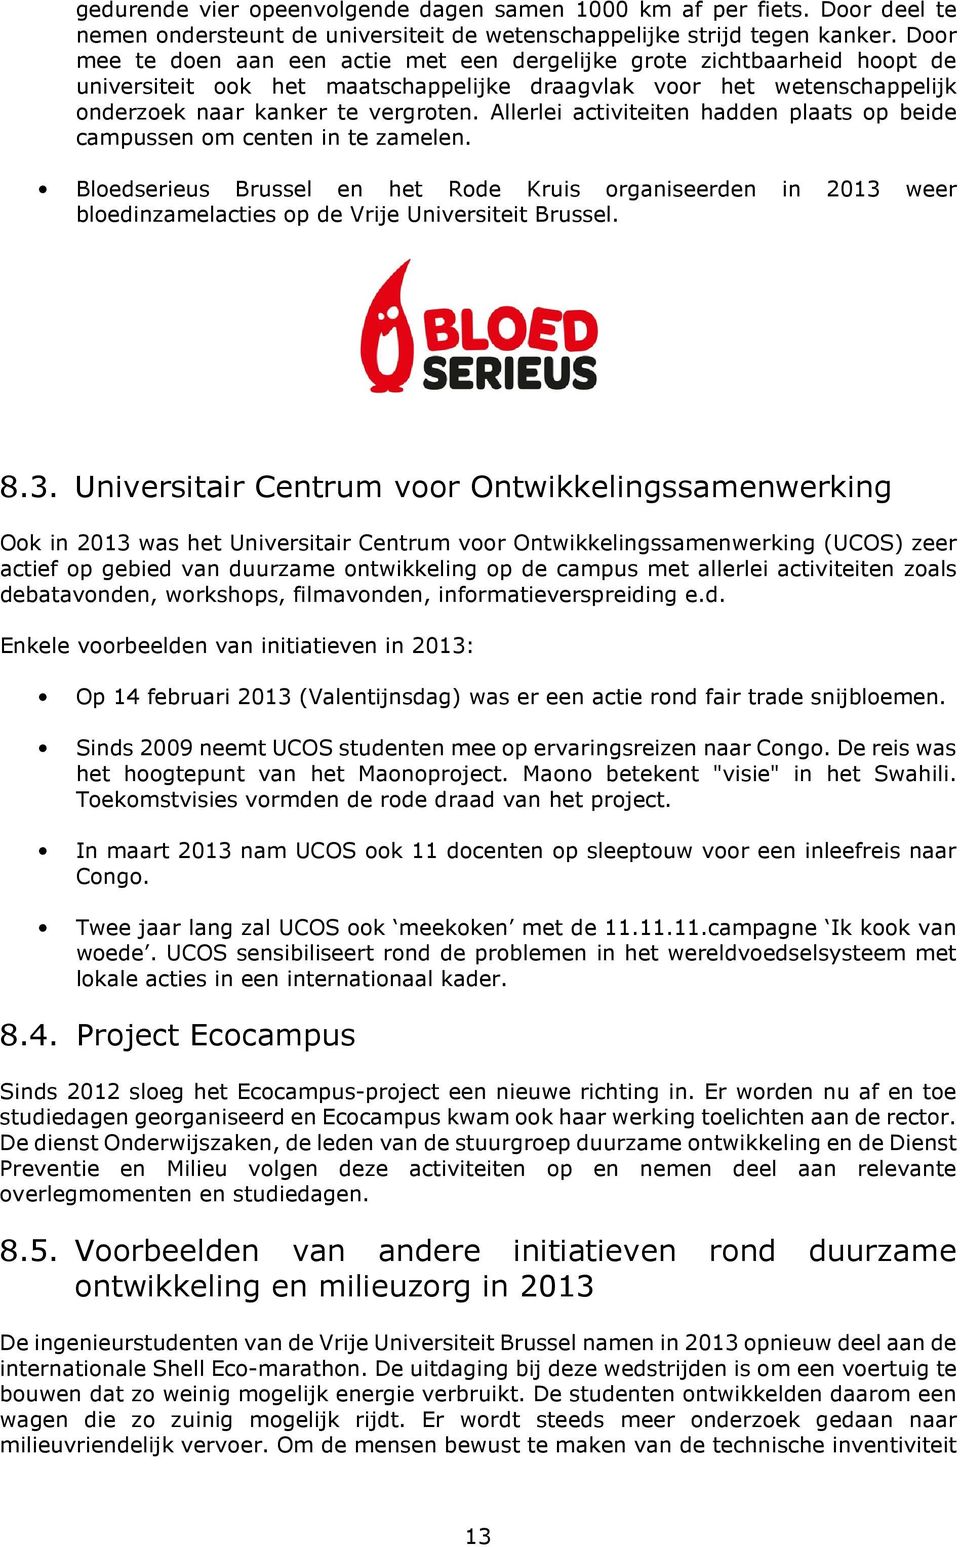 Allerlei activiteiten hadden plaats op beide campussen om centen in te zamelen. Bloedserieus Brussel en het Rode Kruis organiseerden in 2013 weer bloedinzamelacties op de Vrije Universiteit Brussel.